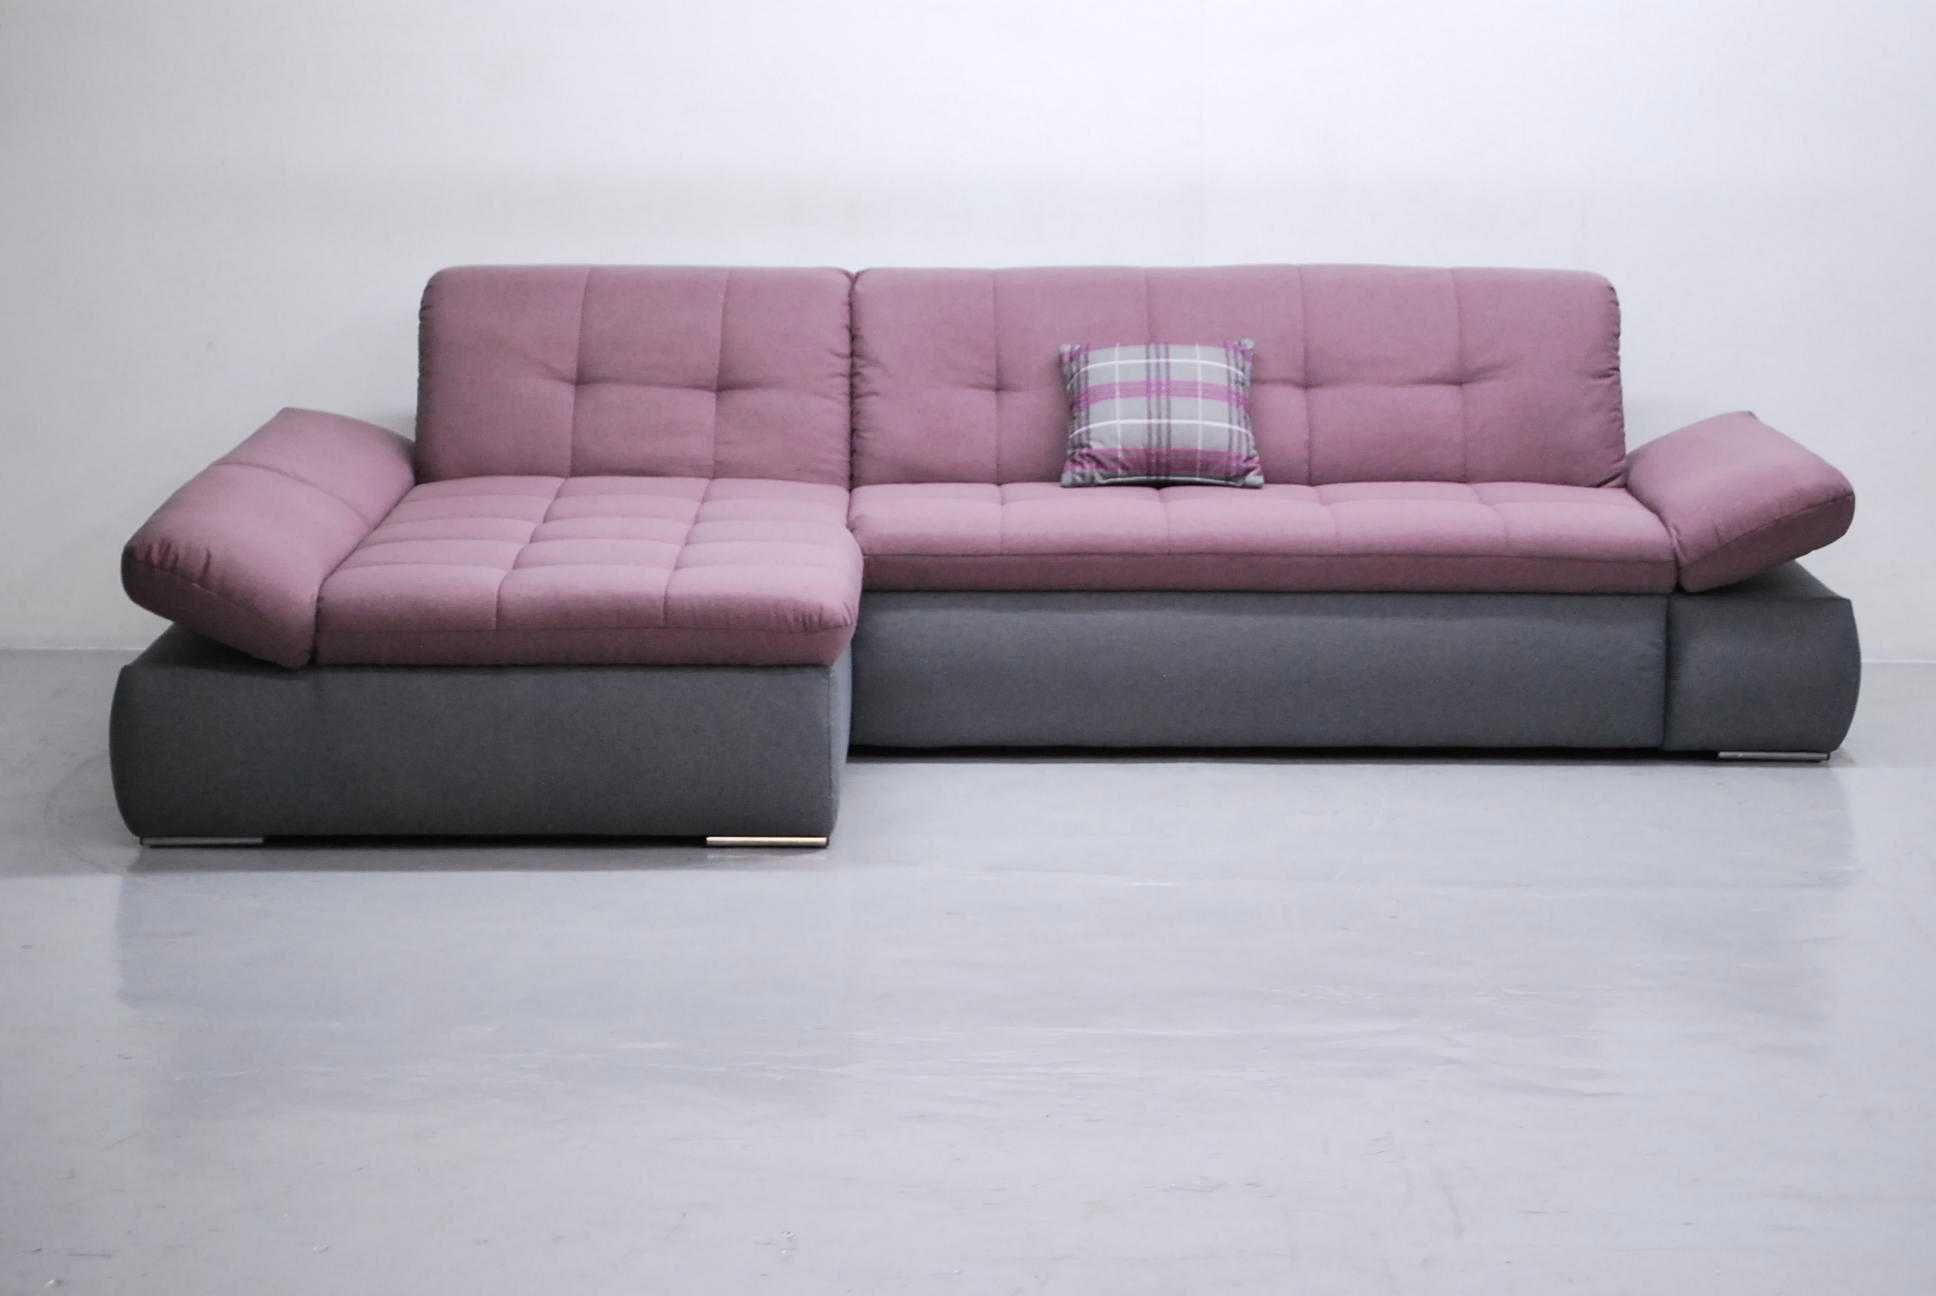 RYK nowoczesny narożnik z funkcja spania, rogówka, sofa